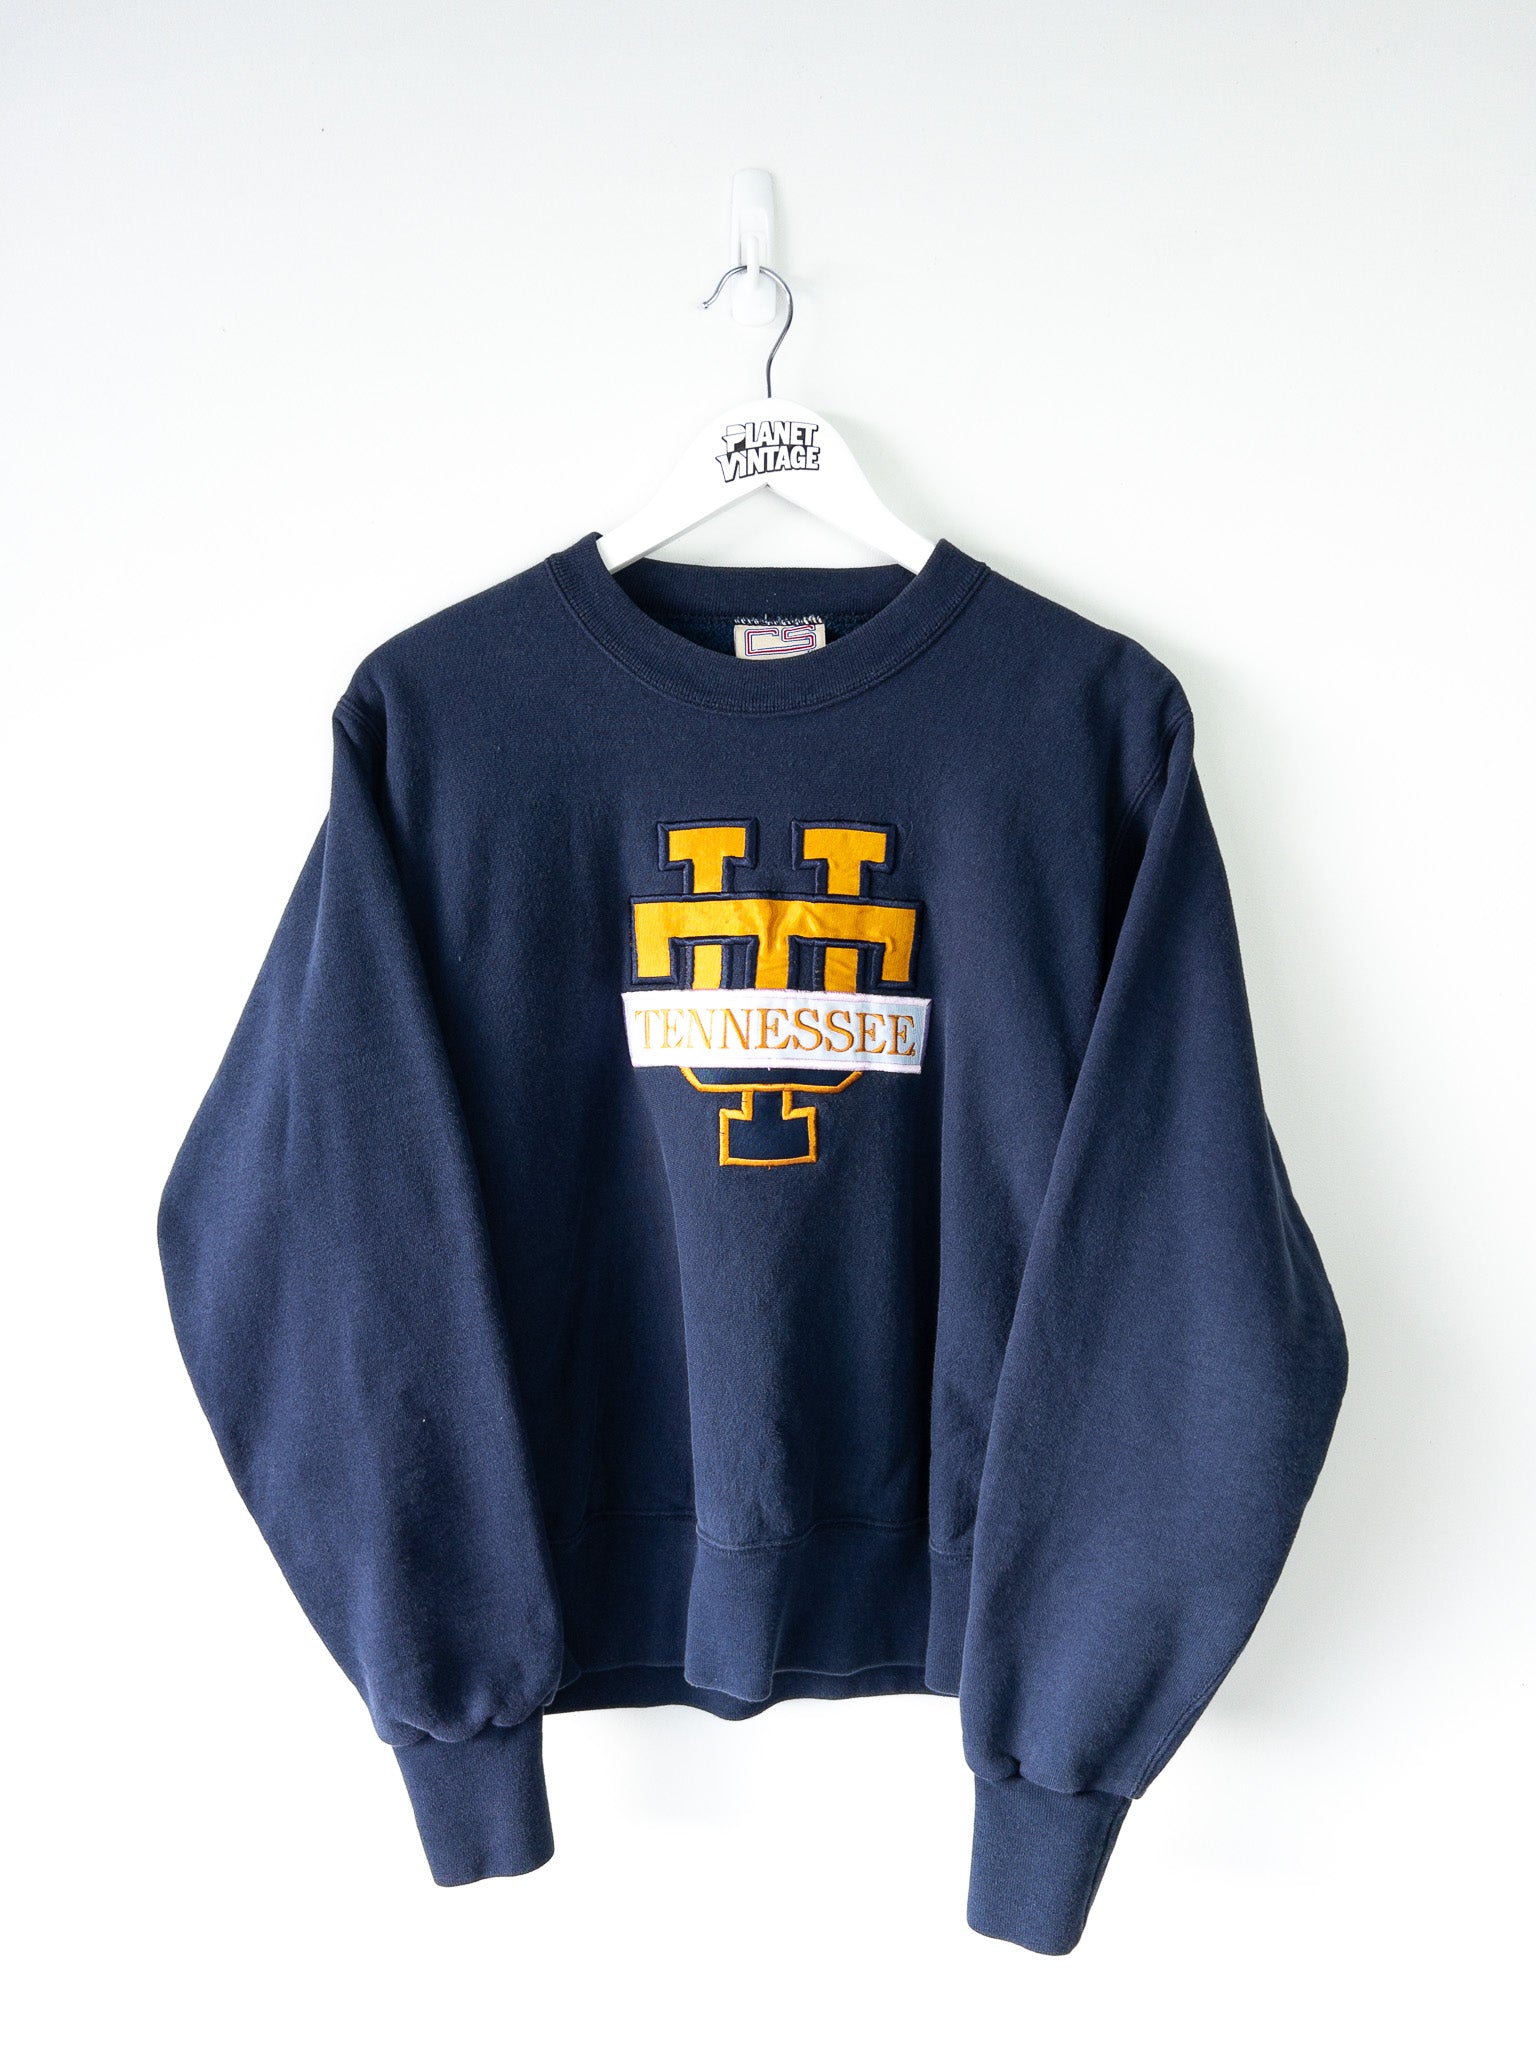 Vintage Tennessee University Sweatshirt (M)